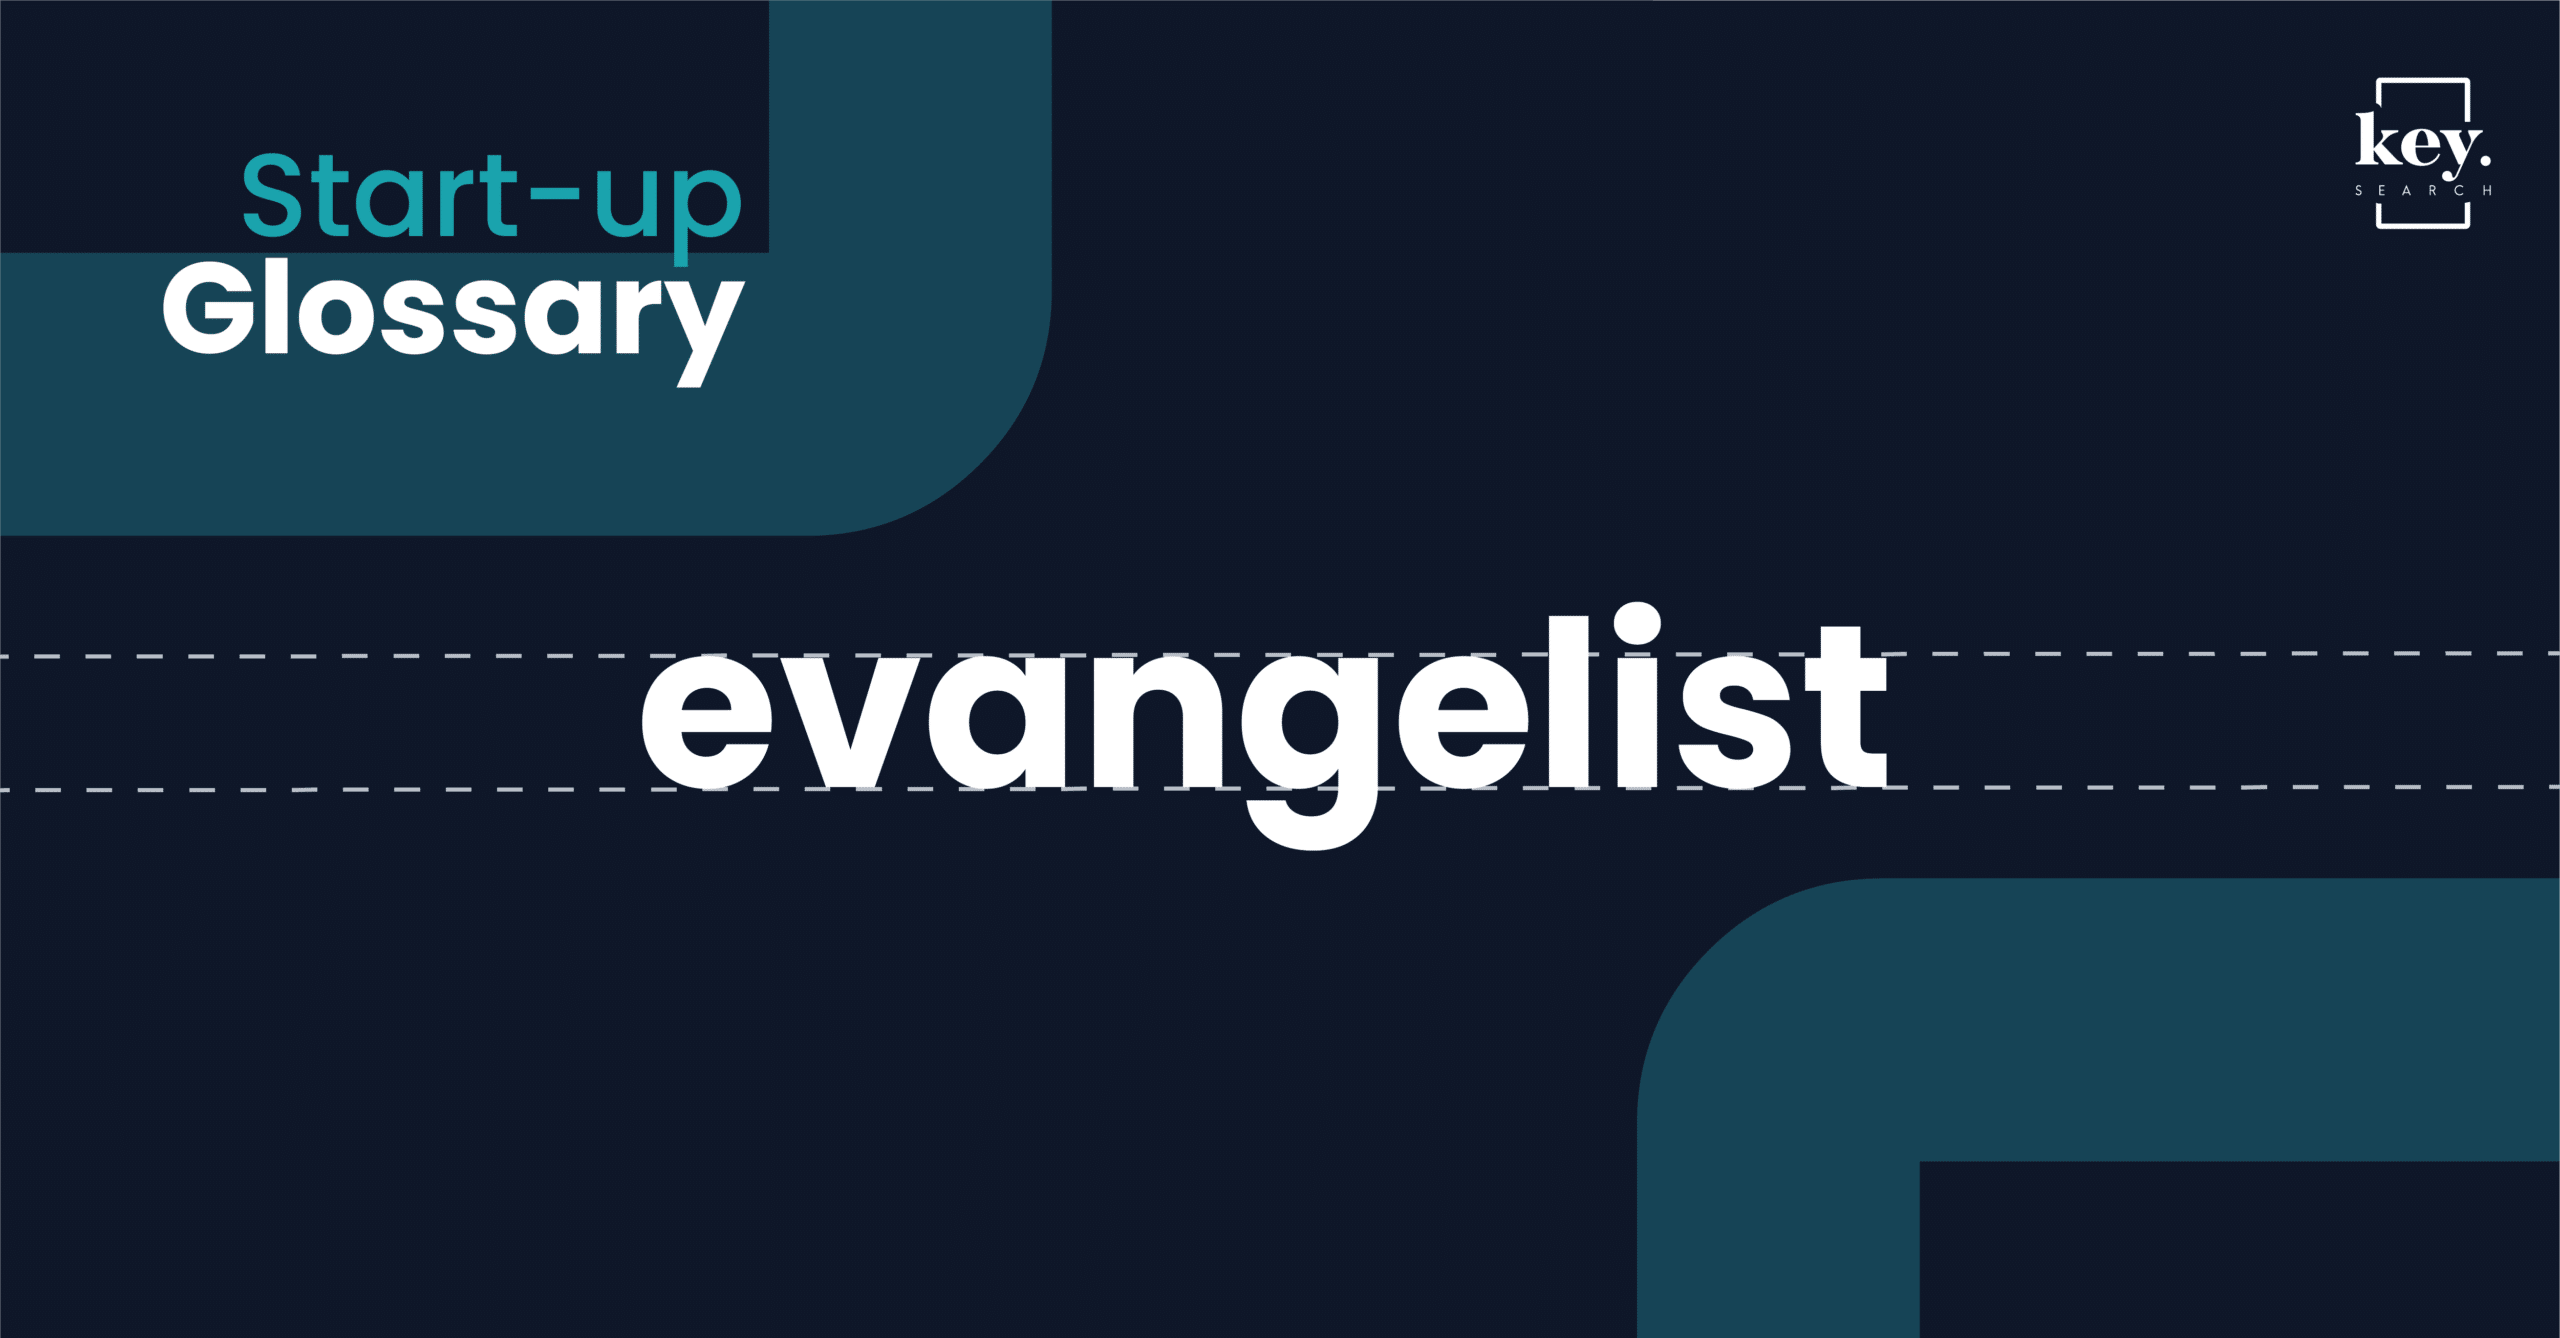 Start-up Glossary_evangelist